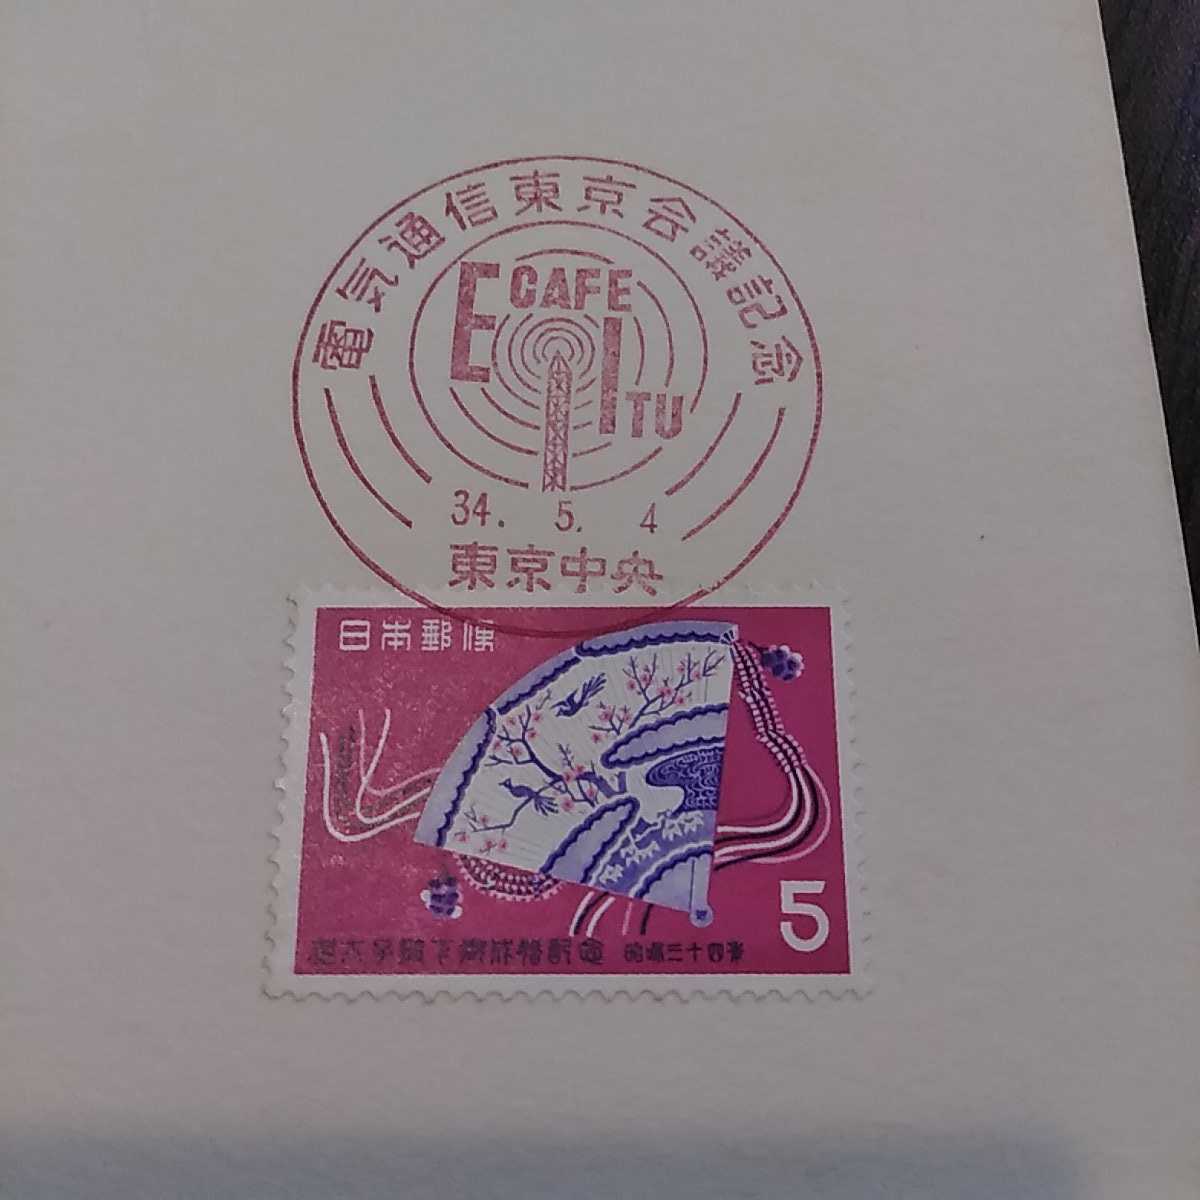 あ)皇太子殿下御成婚記念切手電気通信東京会議記念スタンプ1959年昭和